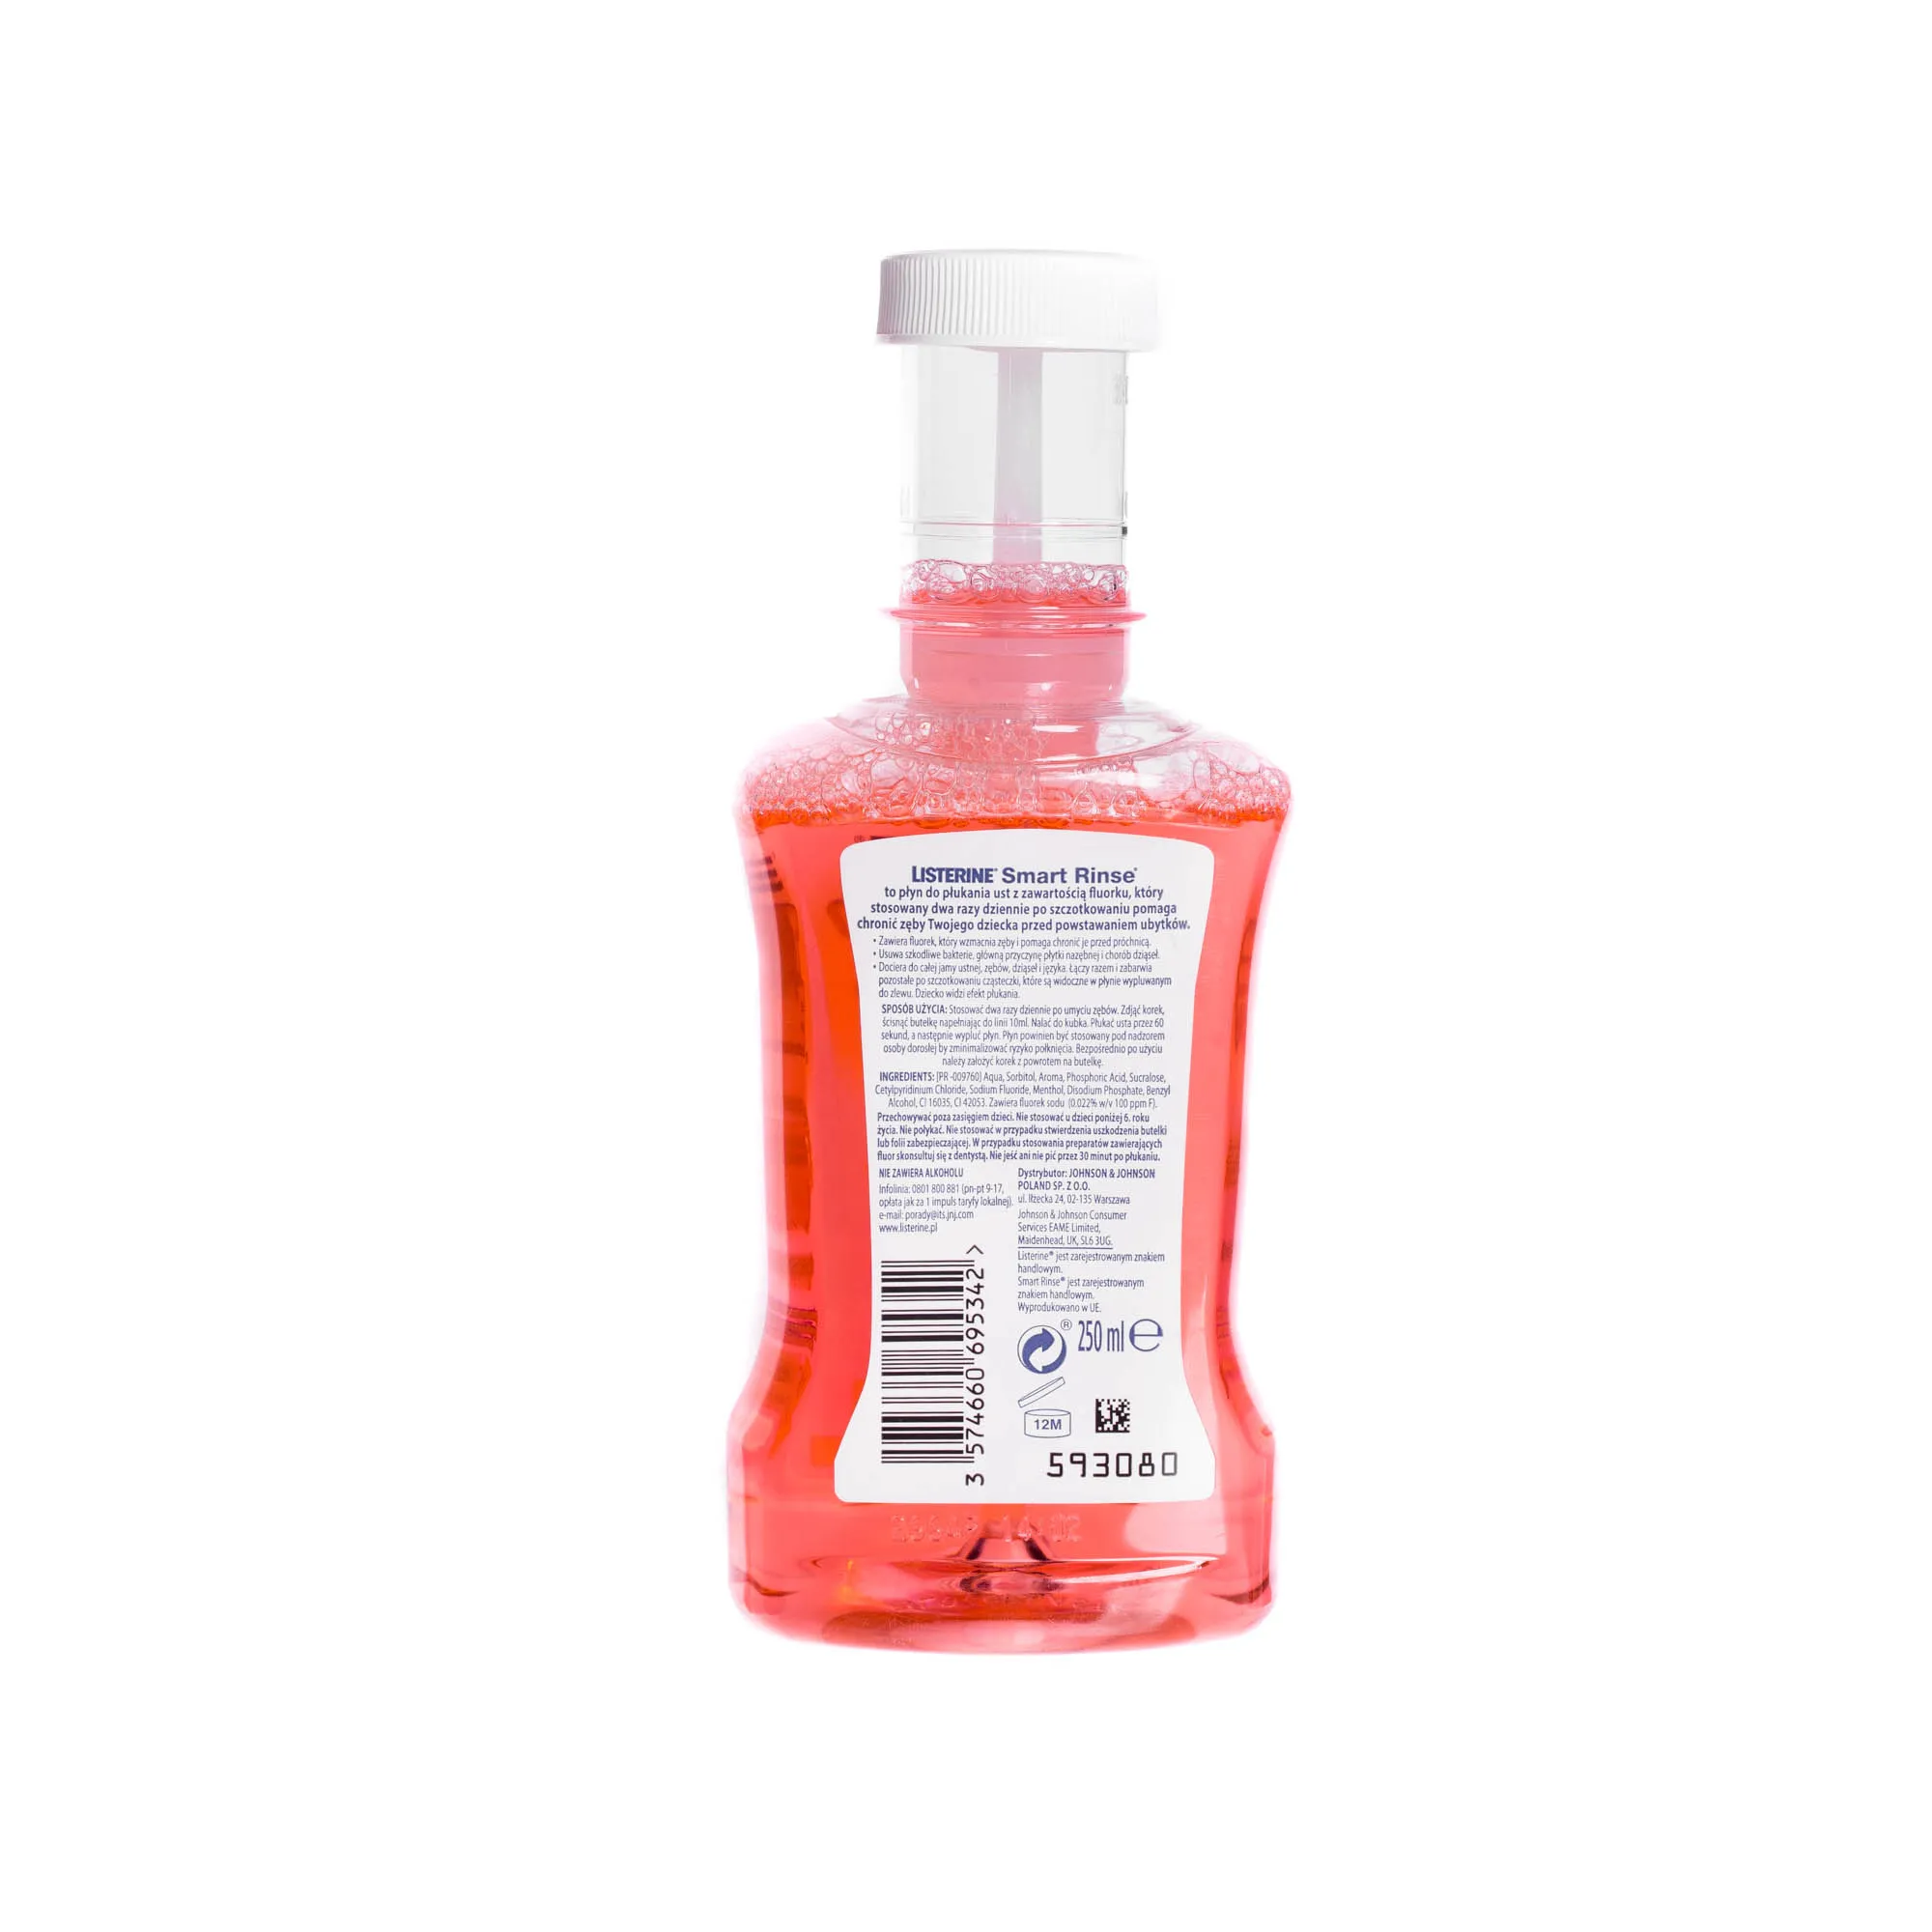 Listerine Smart Rinse - płyn do płukania ust bez alkoholu i cukru o smaku owocowym, 250 ml 